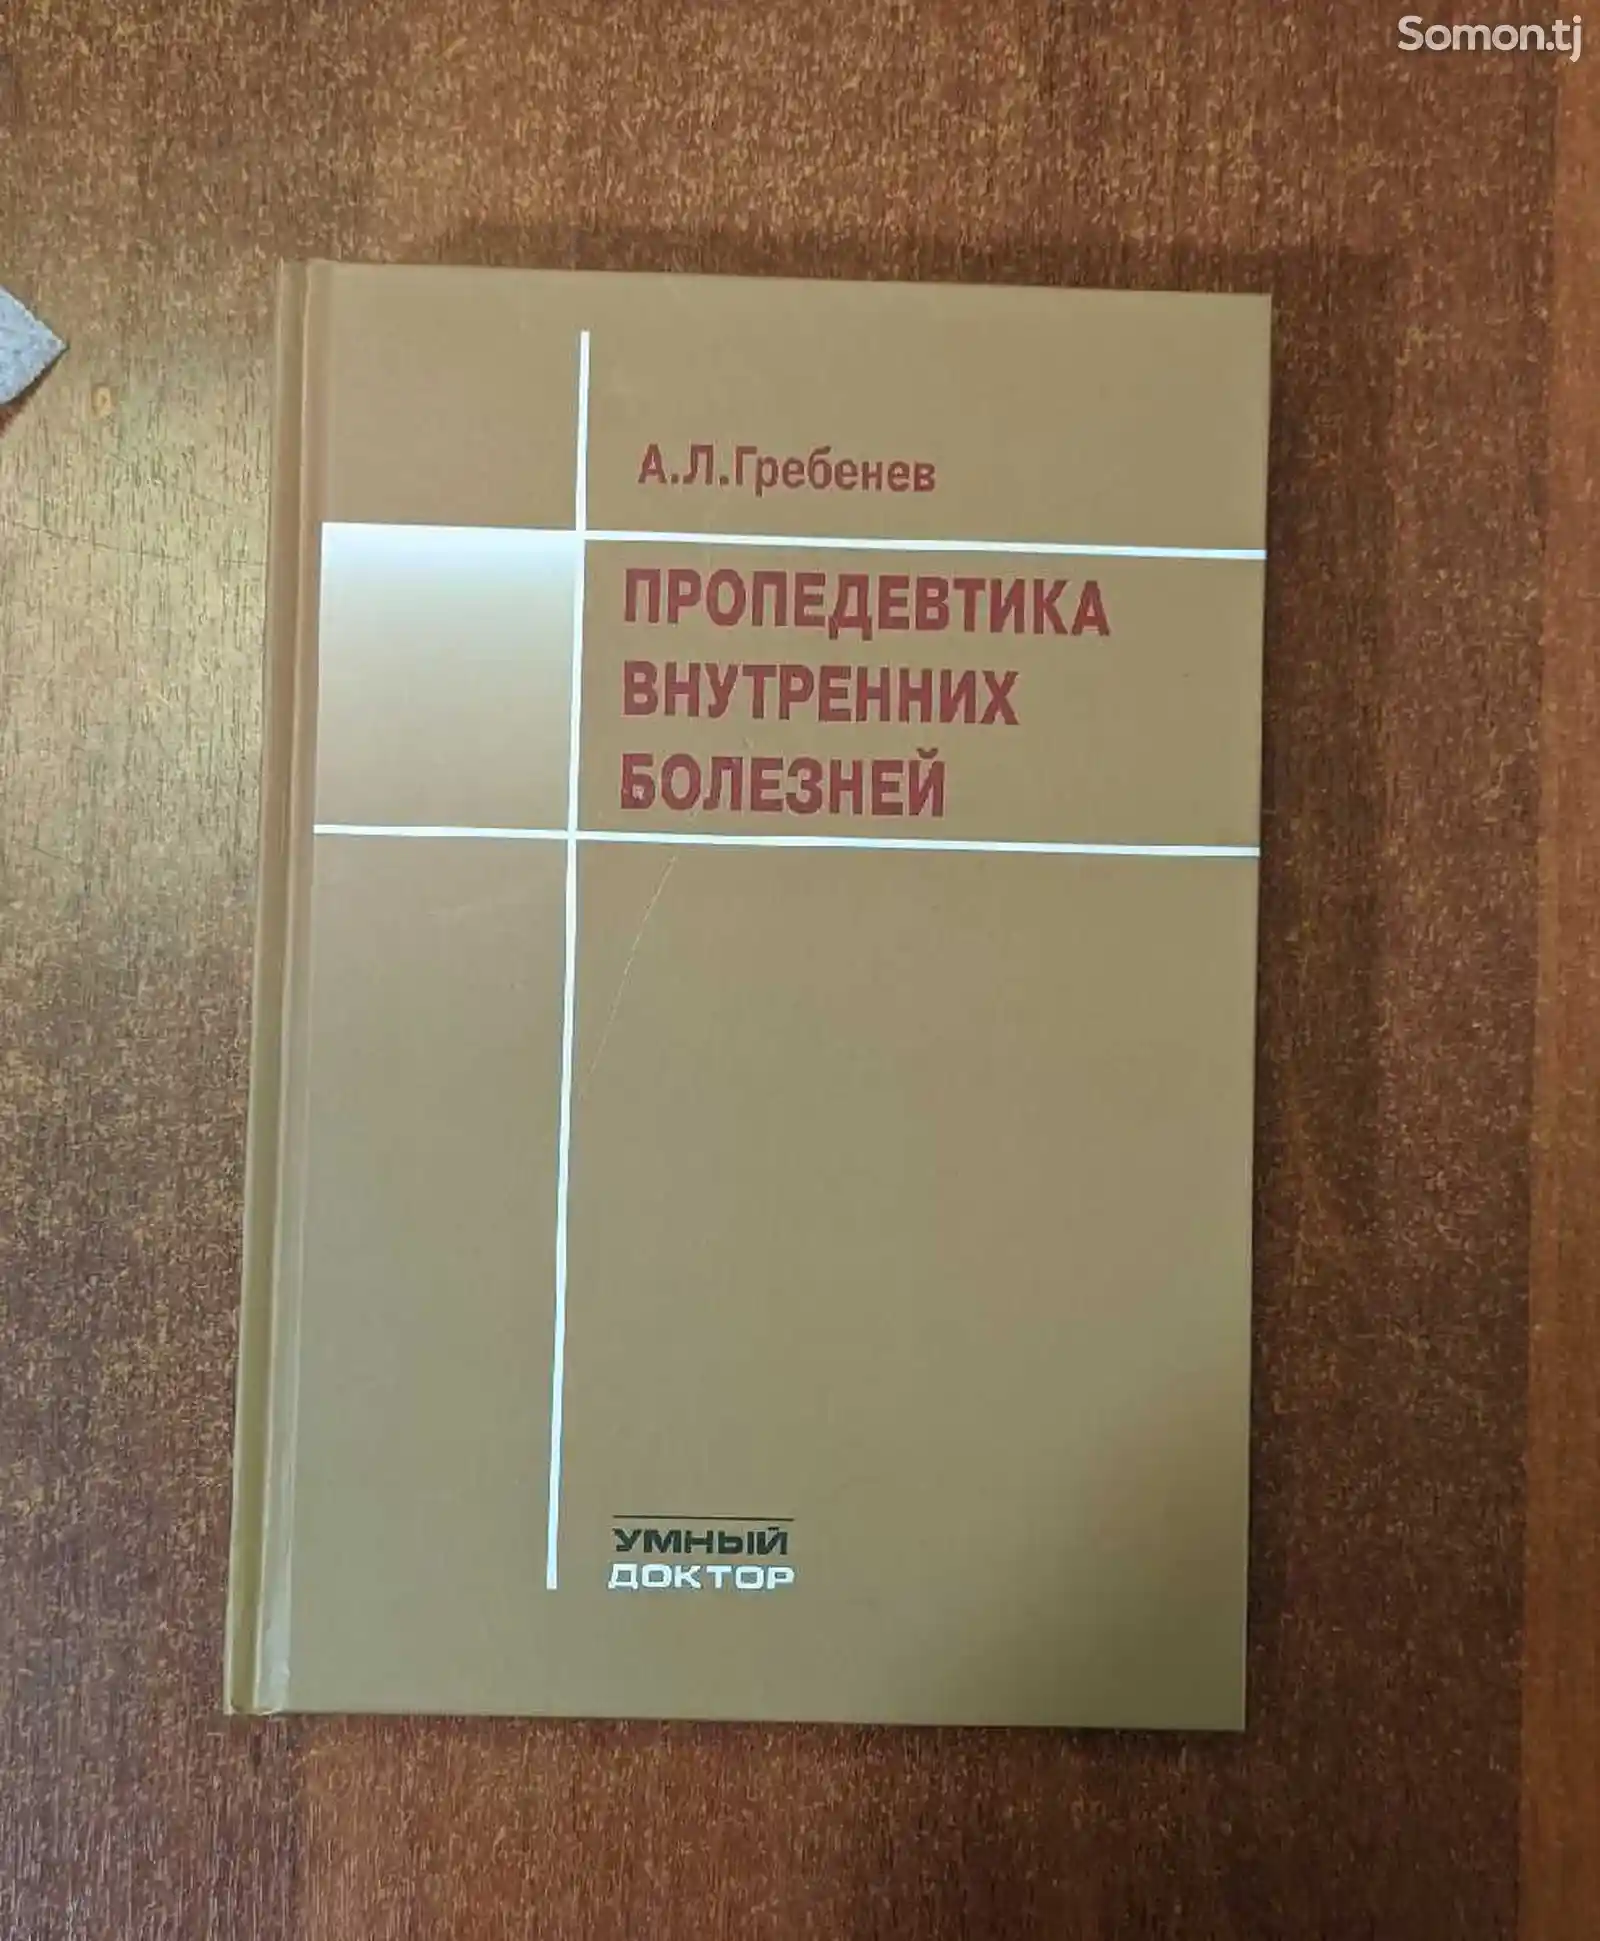 Книга Пропедевдика внутренних болезней-1